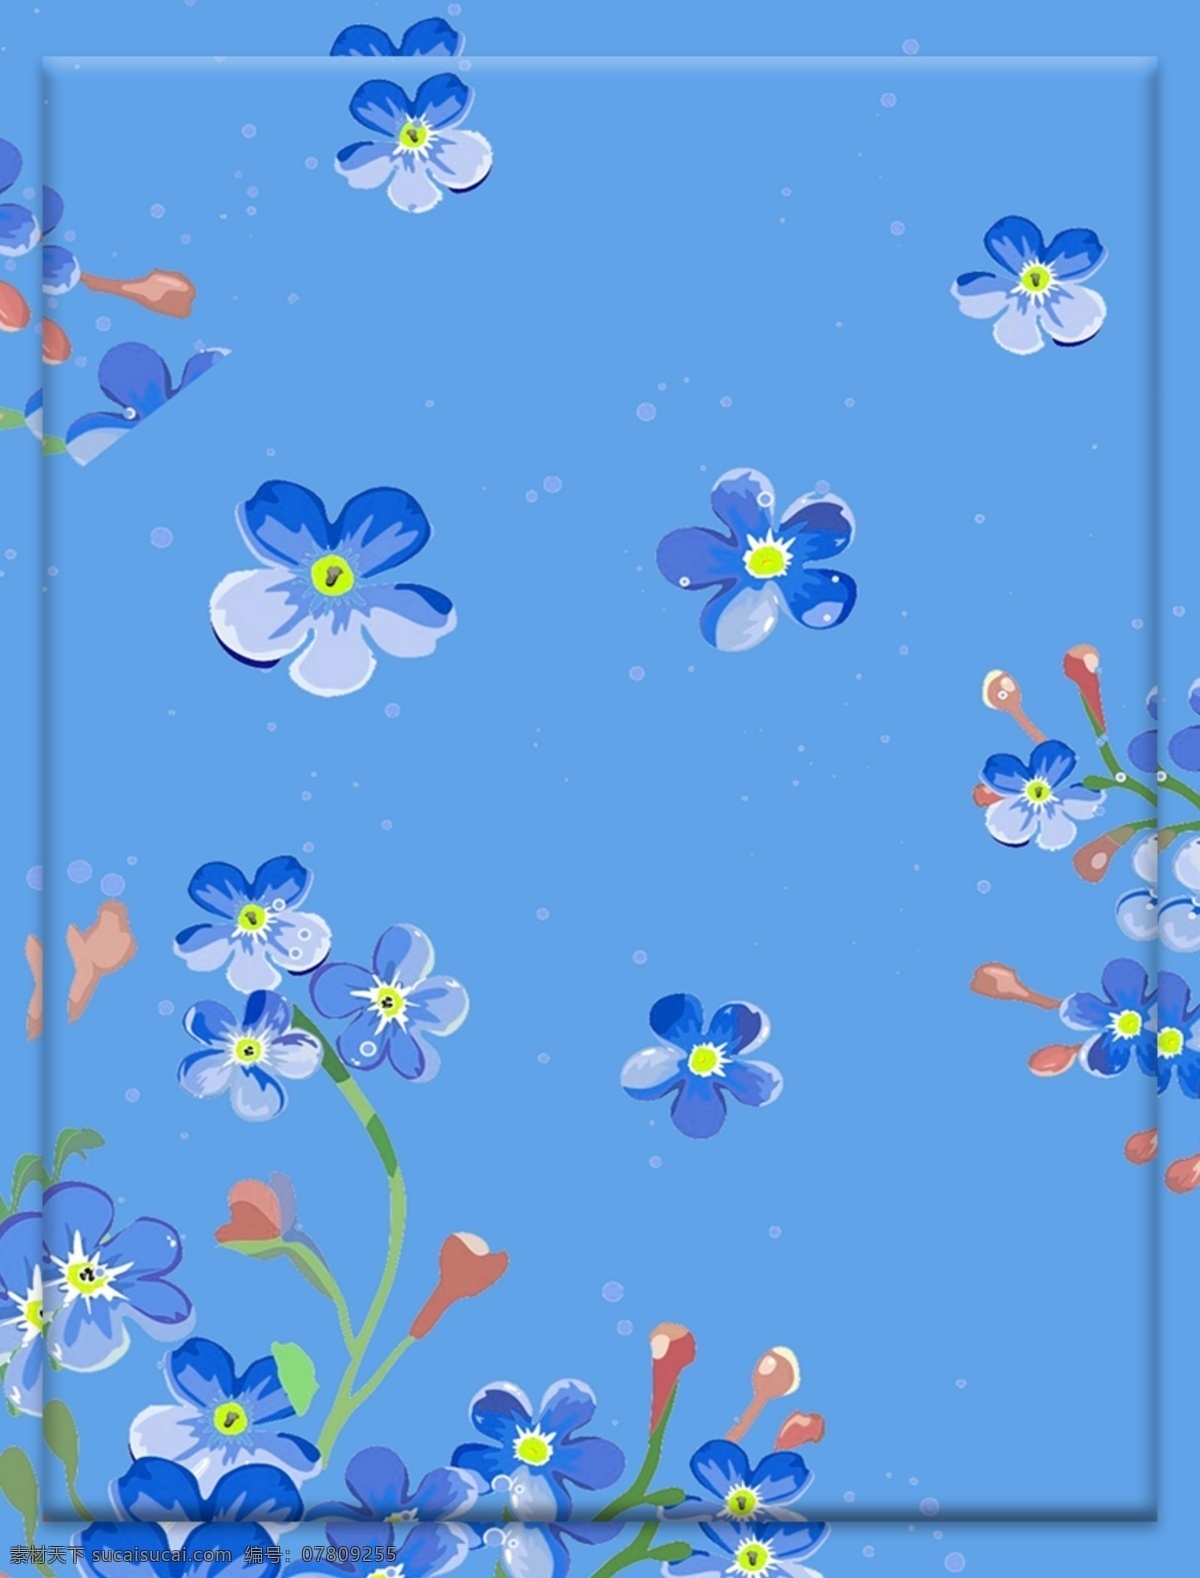 原创 手绘 蓝色 灵动 海洋 花朵 唯美 清新 背景 支持 环保 素雅 干净 花瓣 深海 广告背景